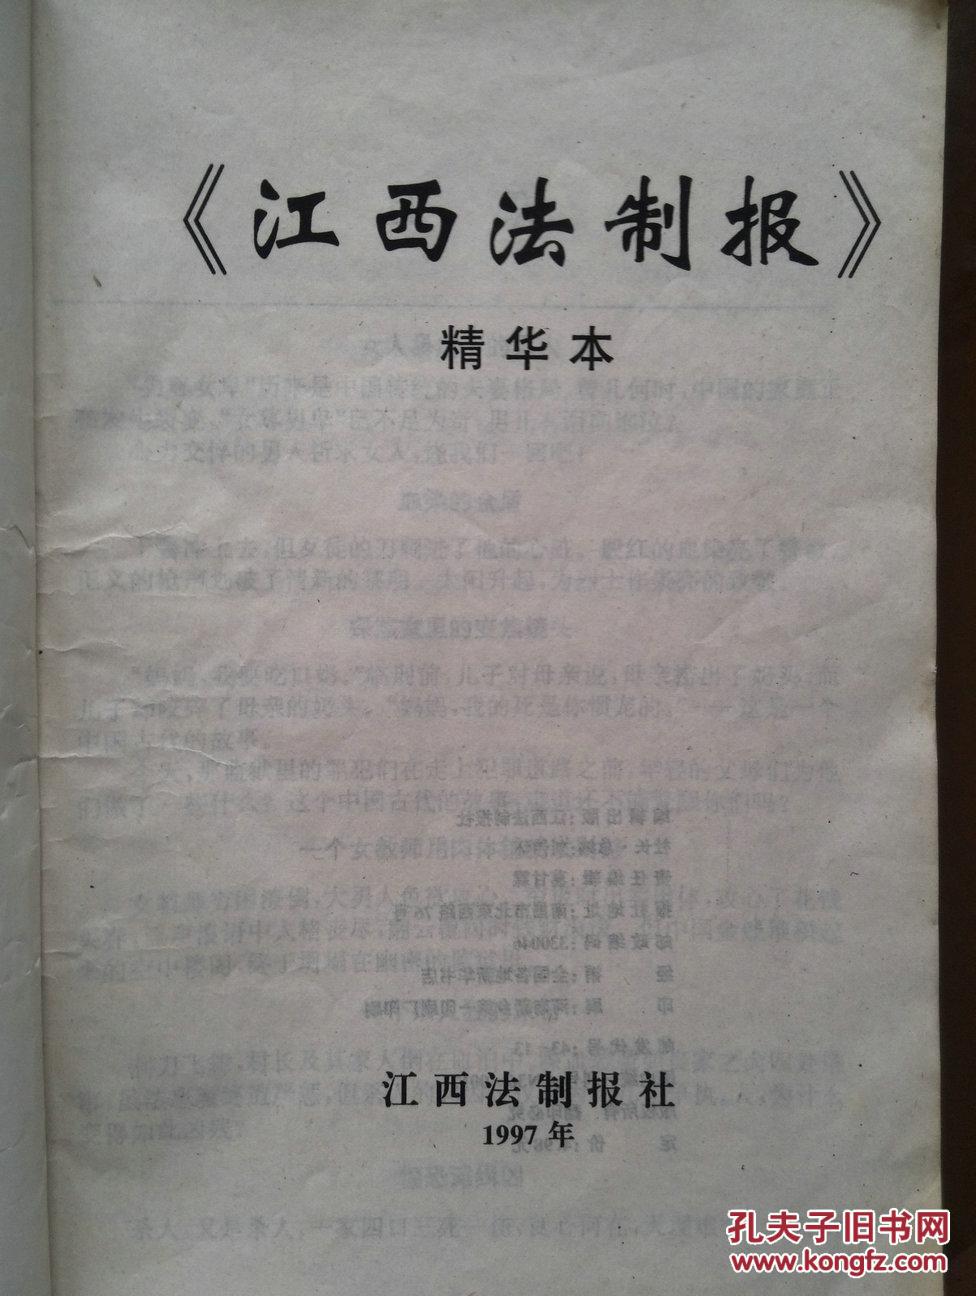 【图】江西法制报精华本1997,中国首例中学生